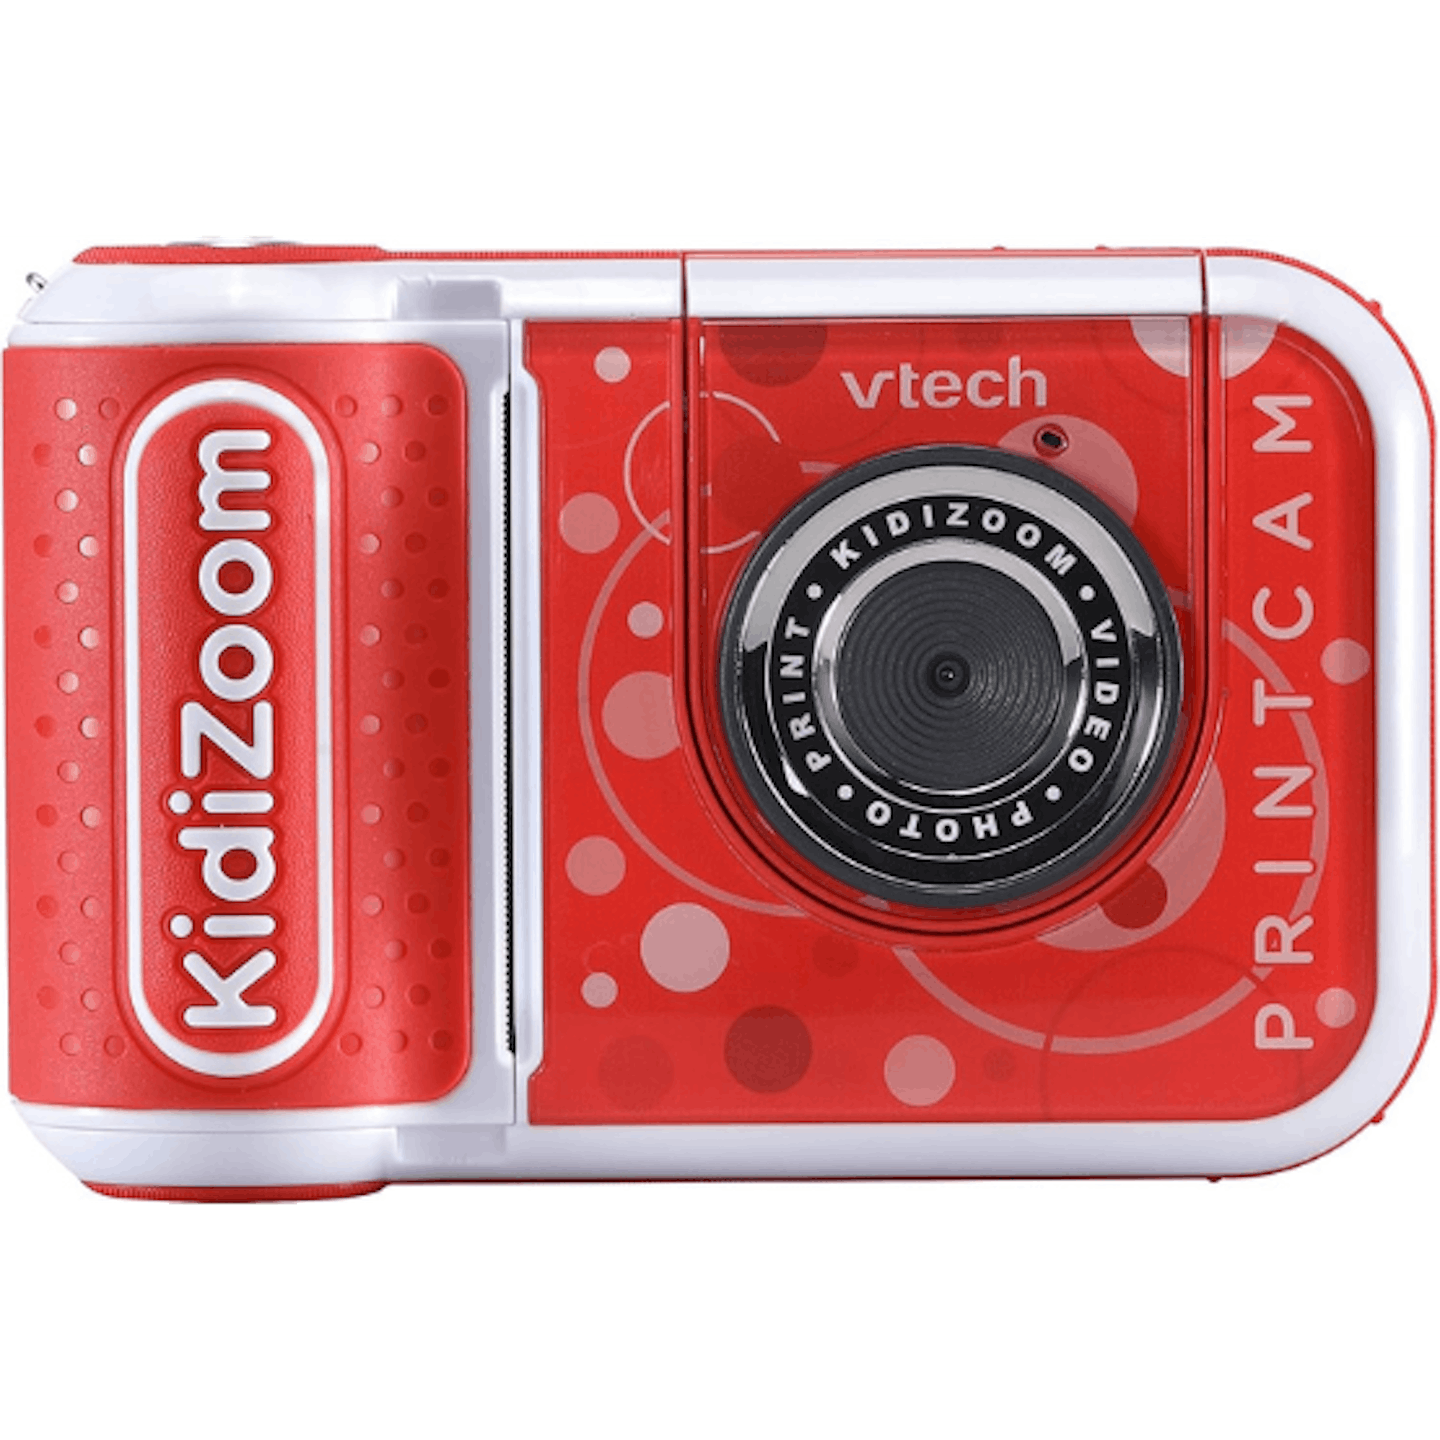 VTech KidiZoom PrintCam Vs. Kidamento Model P Instant Print Camera